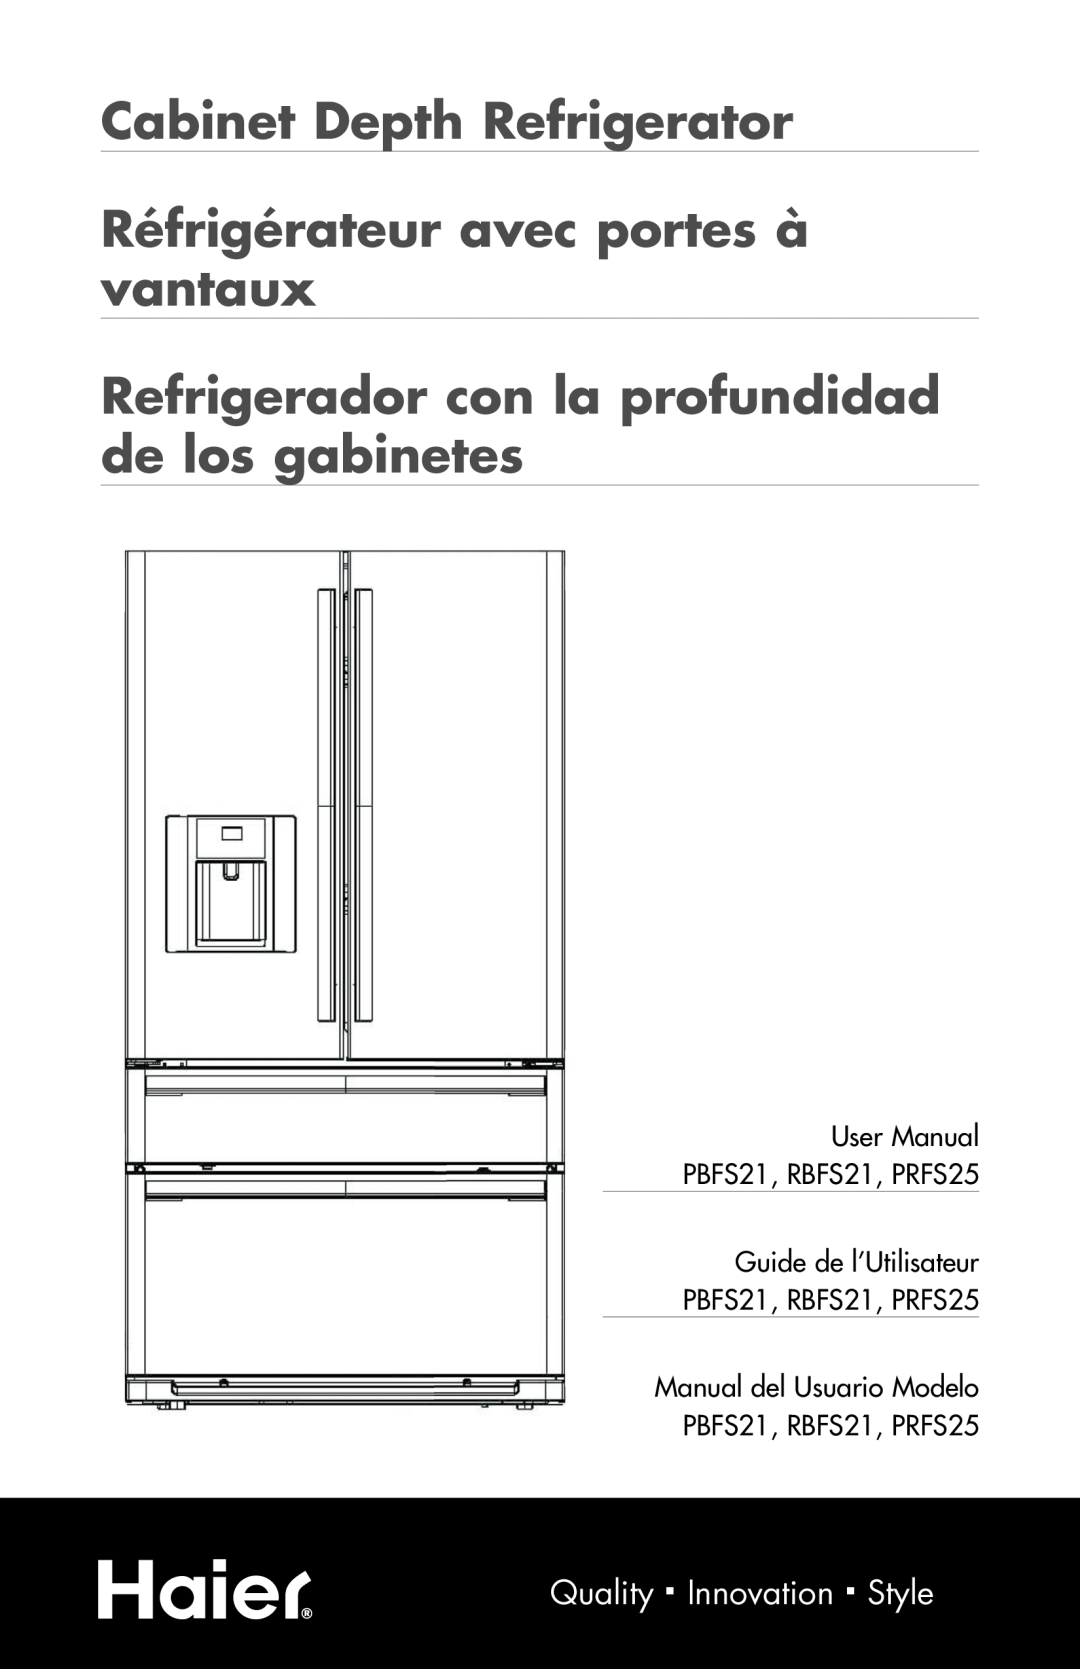 Haier PRFS25 user manual Cabinet Depth Refrigerator, Réfrigérateur avec portes à vantaux, Quality.ß.Innovation.ß.Style 